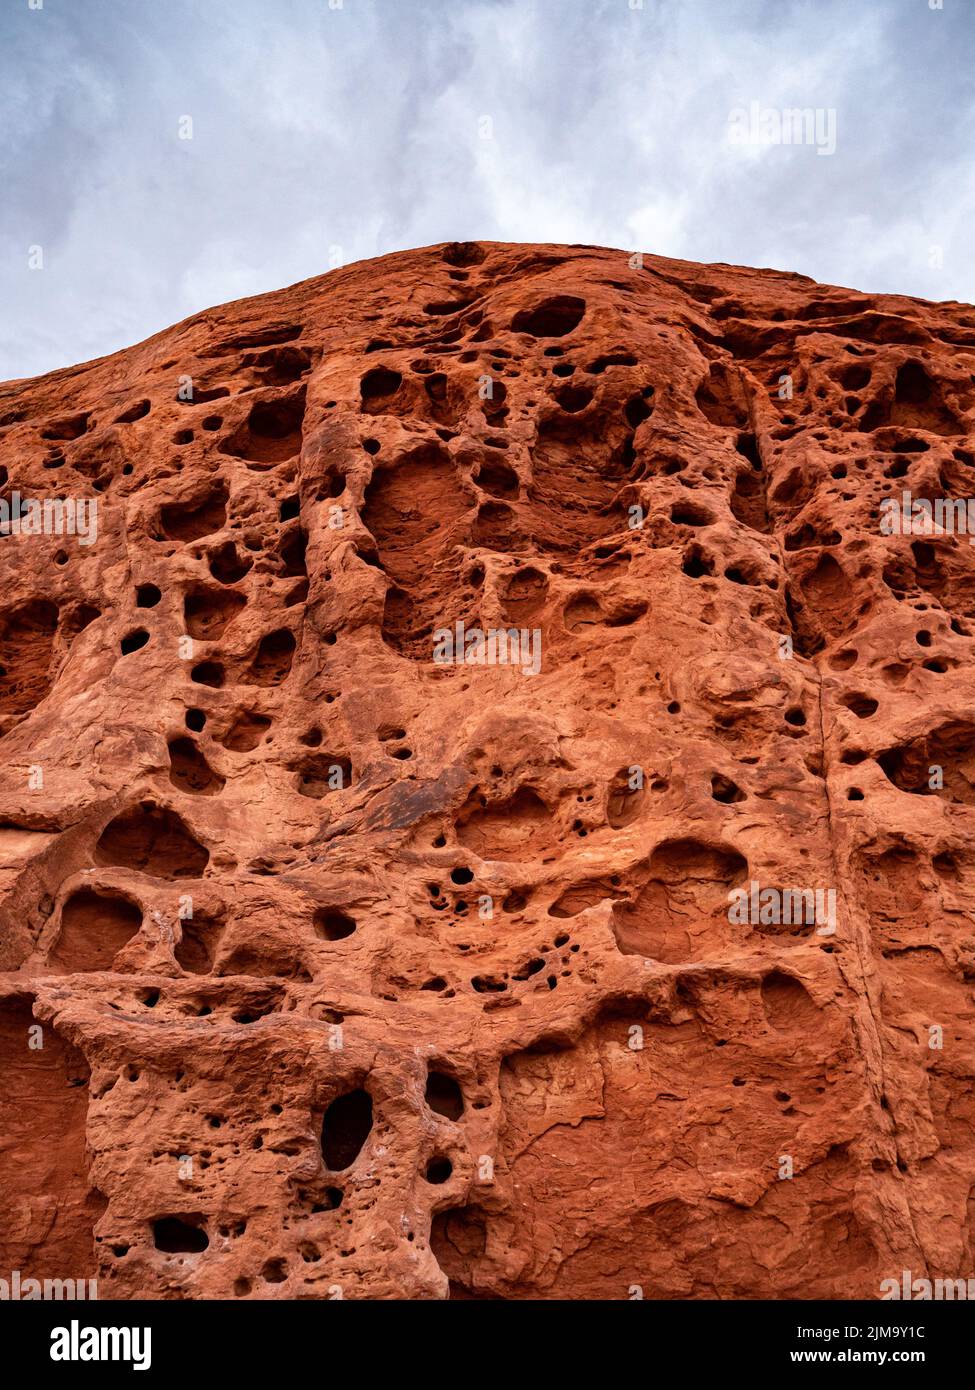 Eine vertikale differentielle Erosion von Sandstein, die Unebenheiten und Mulden verursacht, Valley of Fire State Park Stockfoto